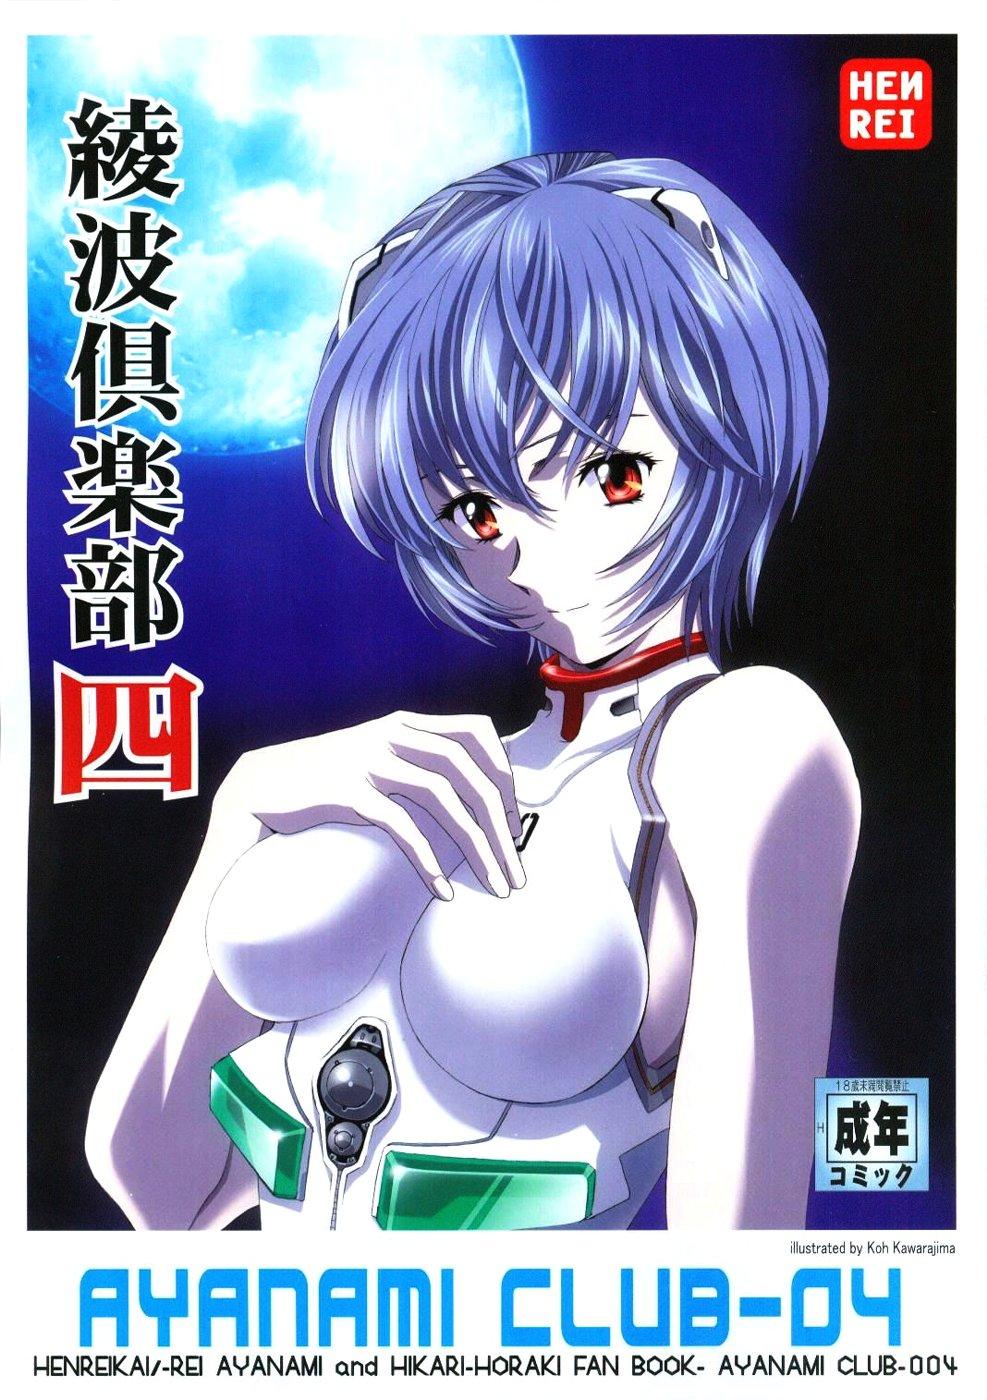 Oil Ayanami Club 4 - Neon genesis evangelion Keroro gunsou El cazador de la bruja Slut - Picture 1